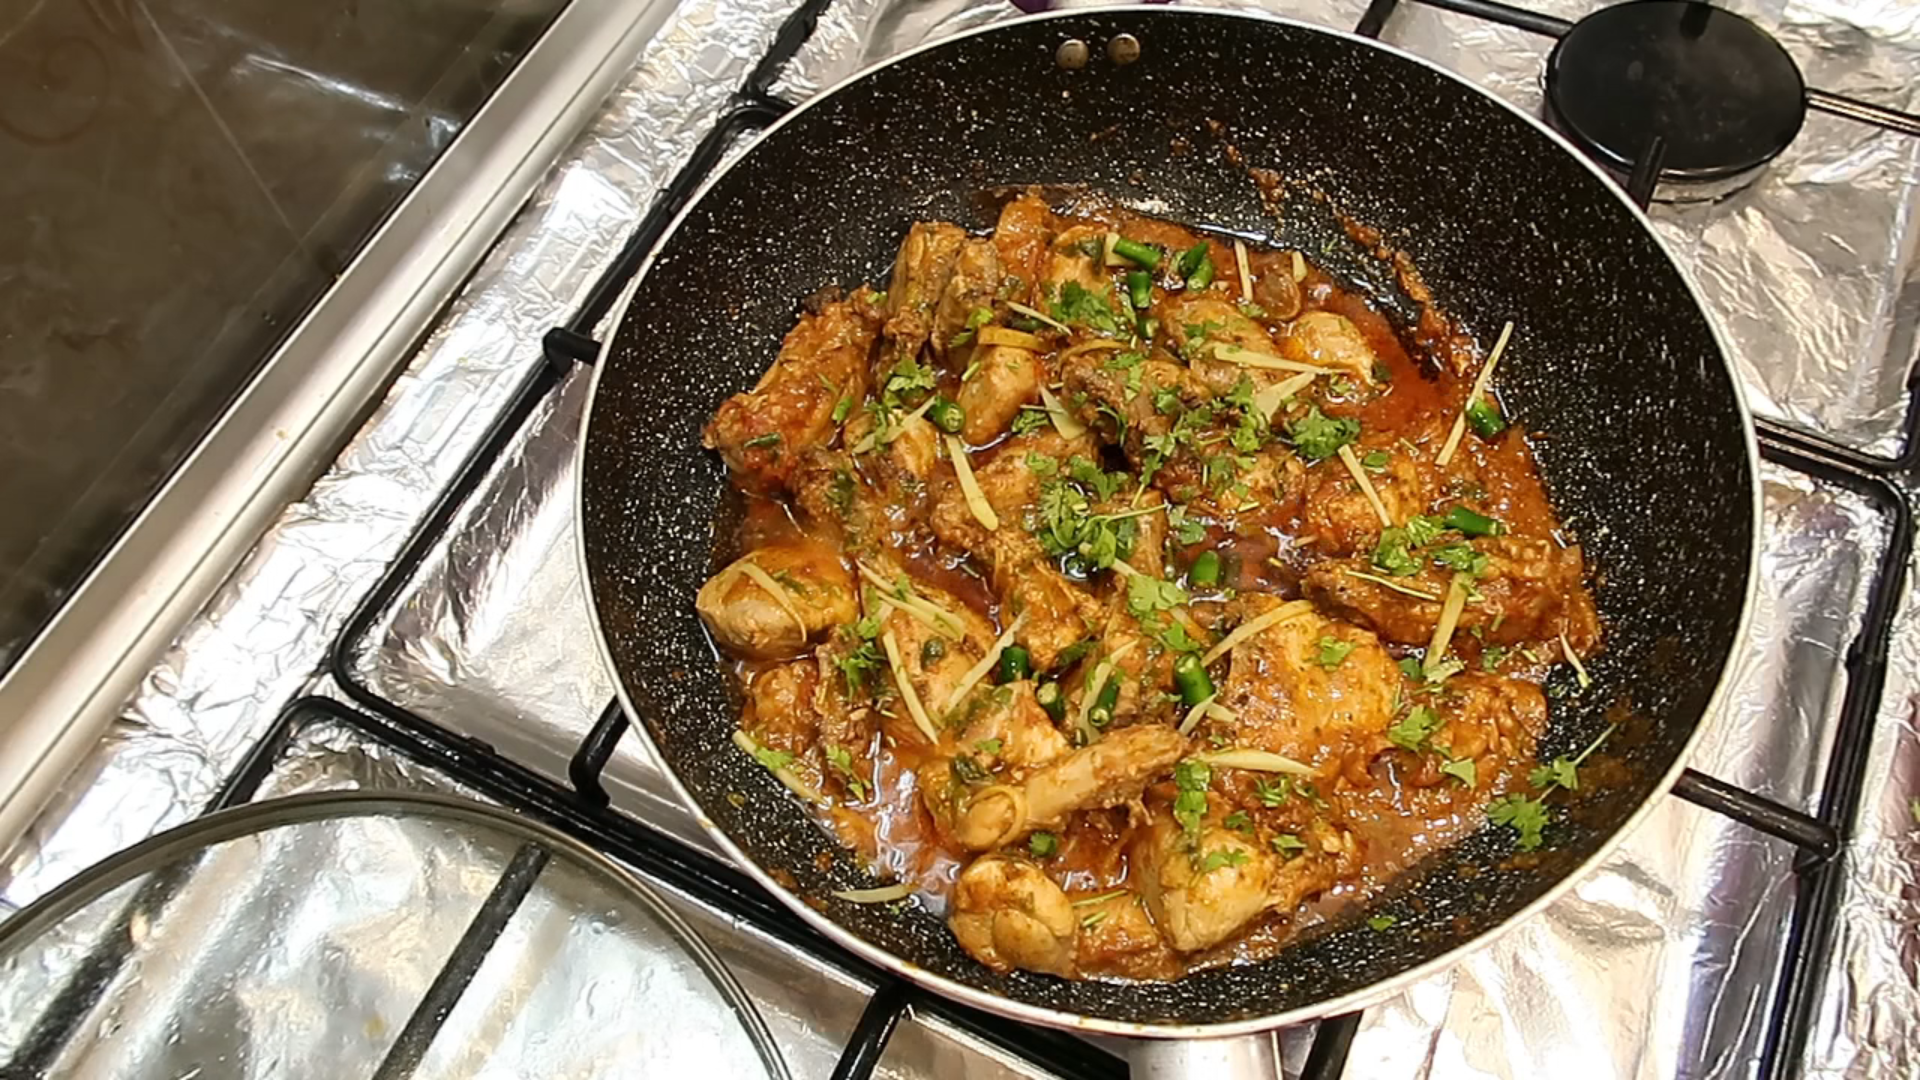 Karahi Chicken (Kadai Chicken) - My Food Story